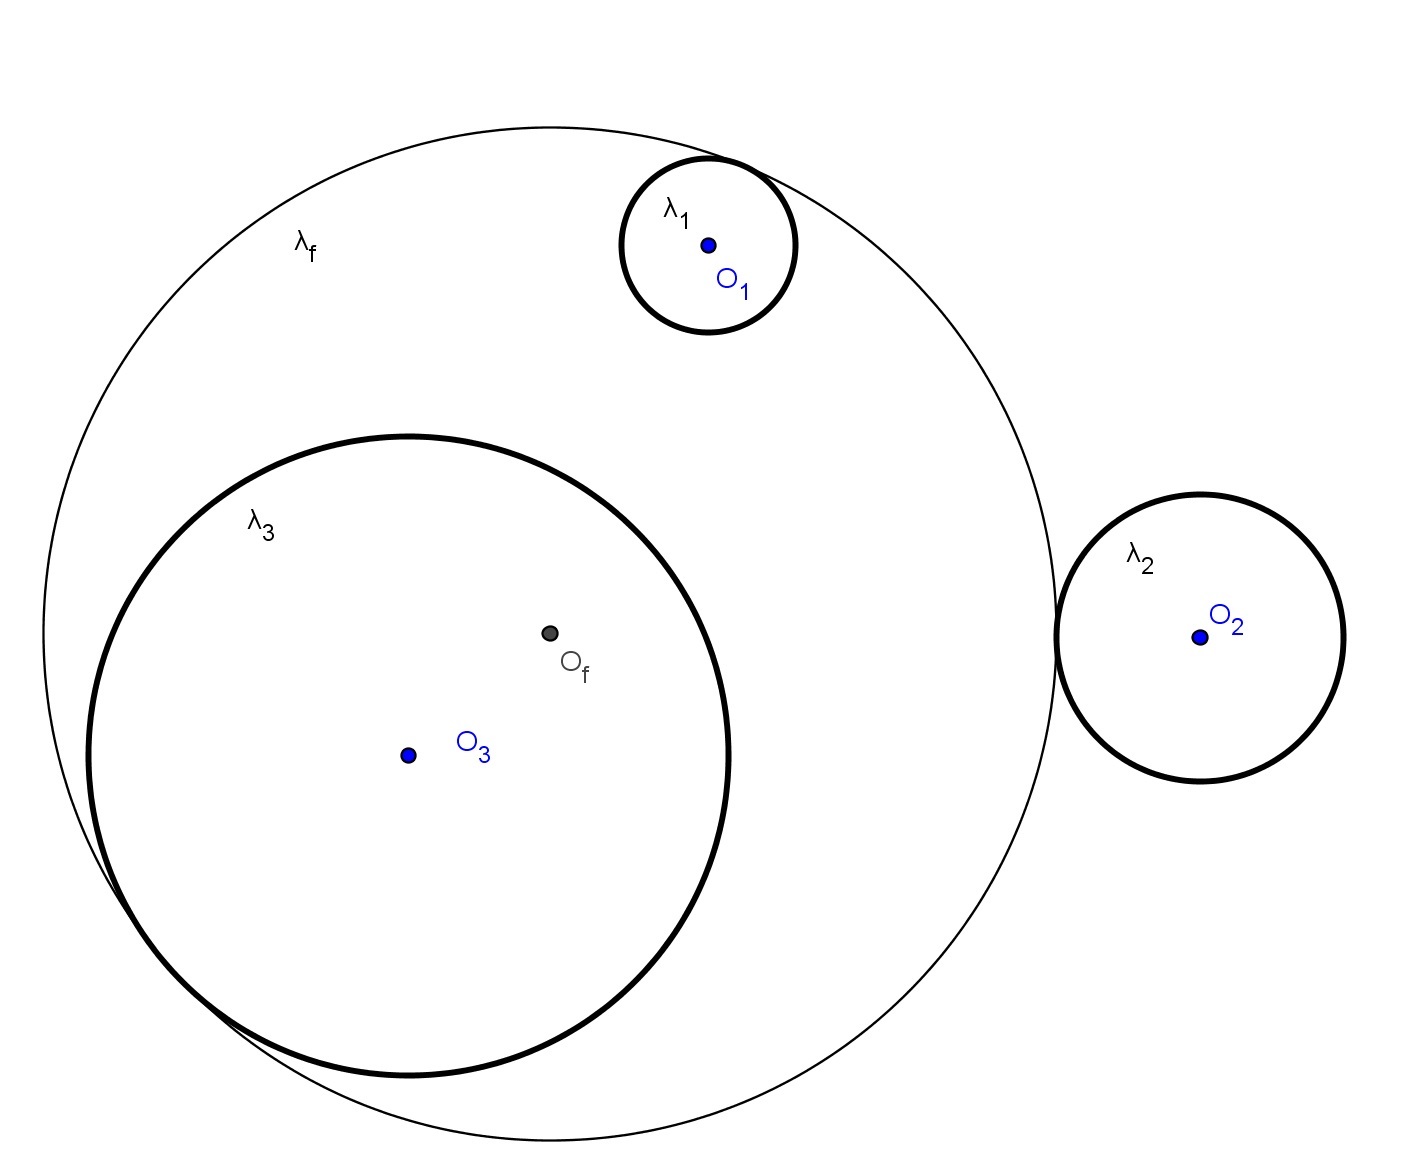 Seja O g e R g o centro e o raio respectivamente de Λ g, então a circunferência λ g de centro em O g e raio S g